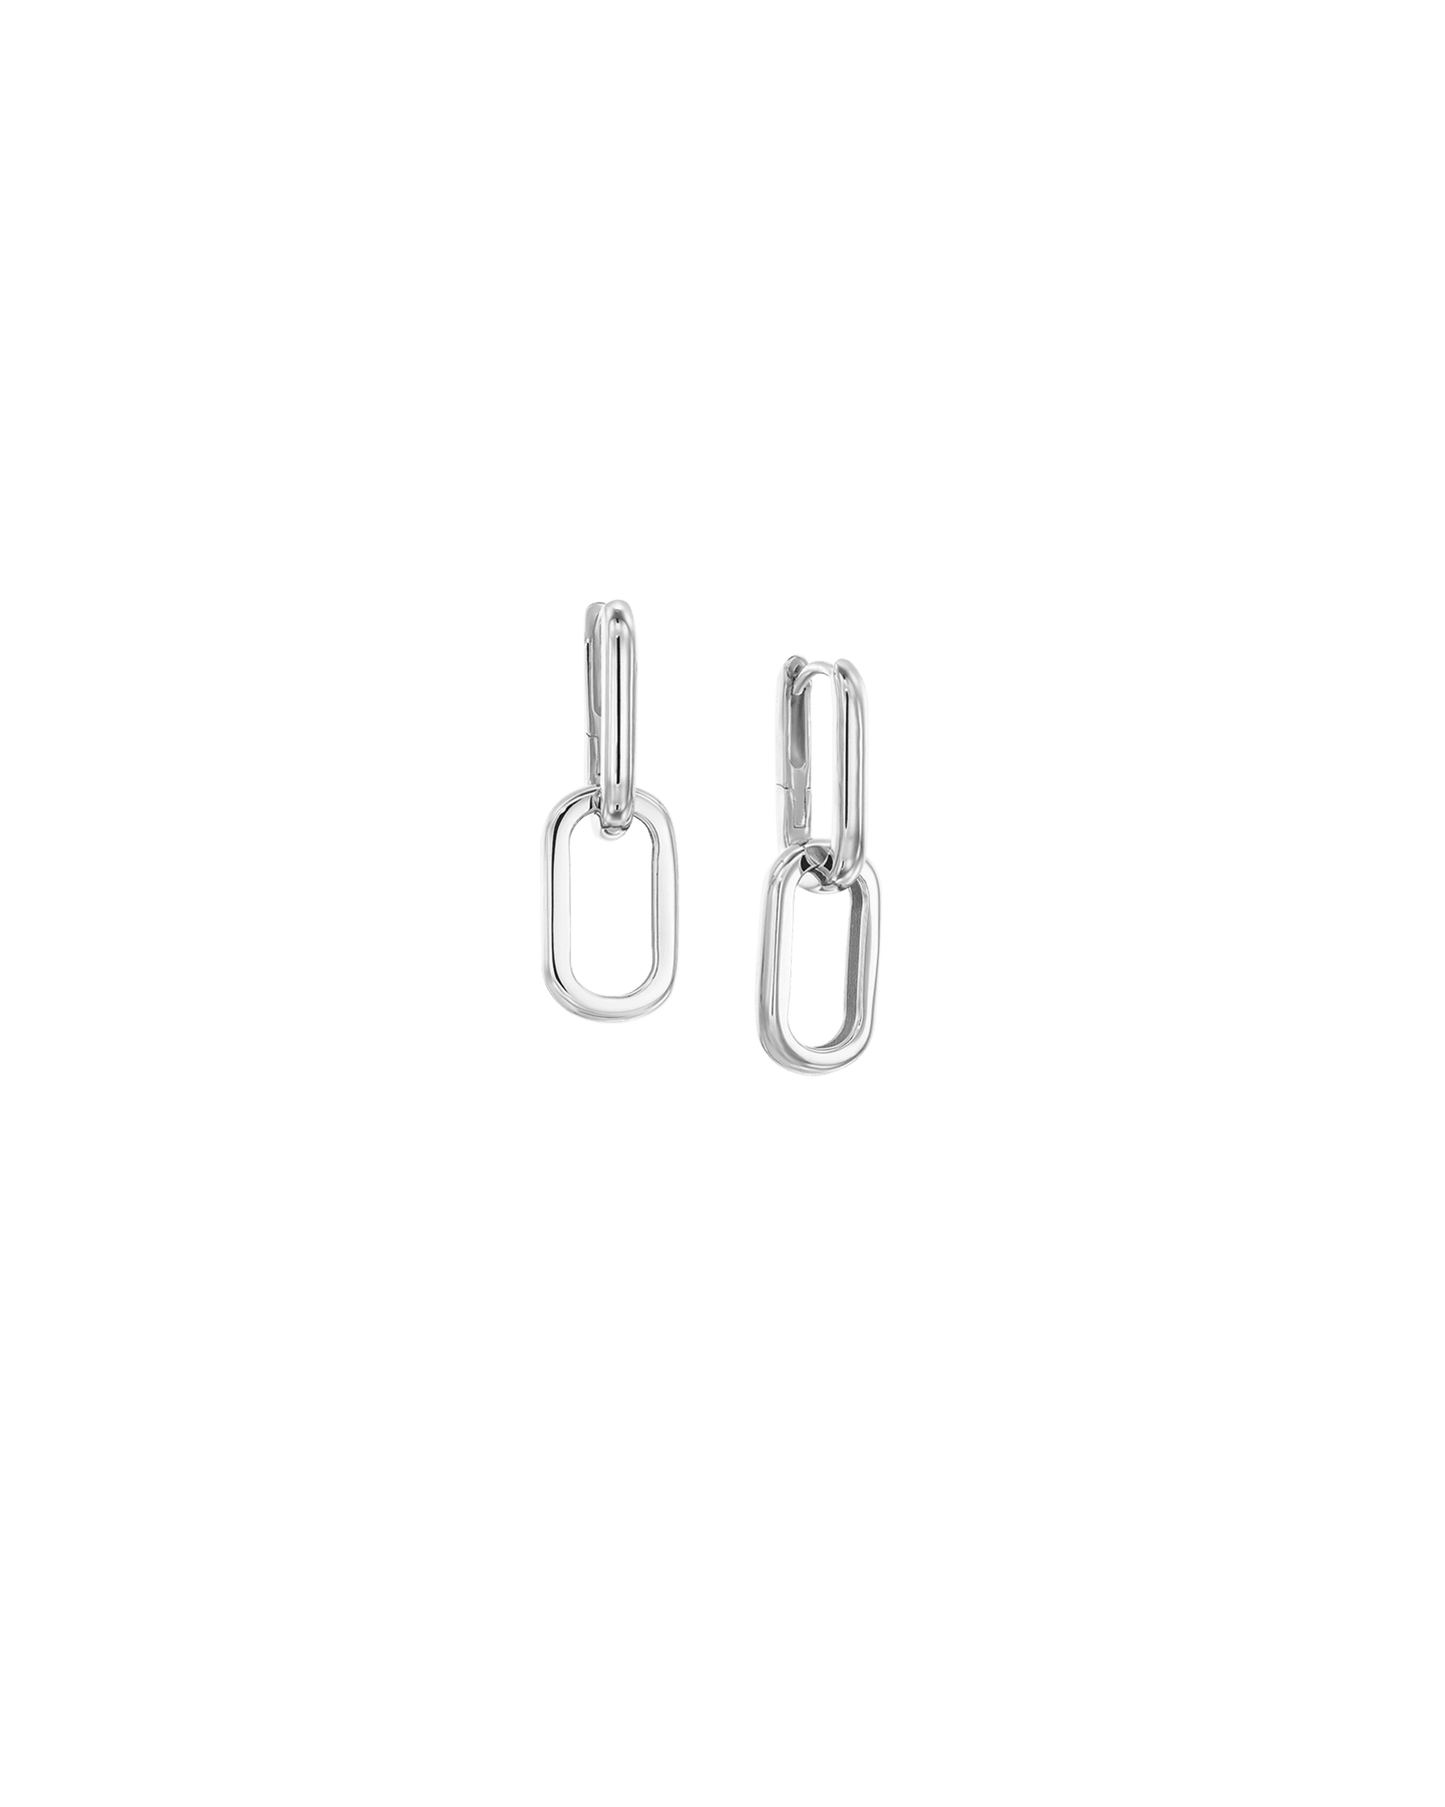 Link Drop Earrings - 925 Sterling Silver Earrings magal-dev 